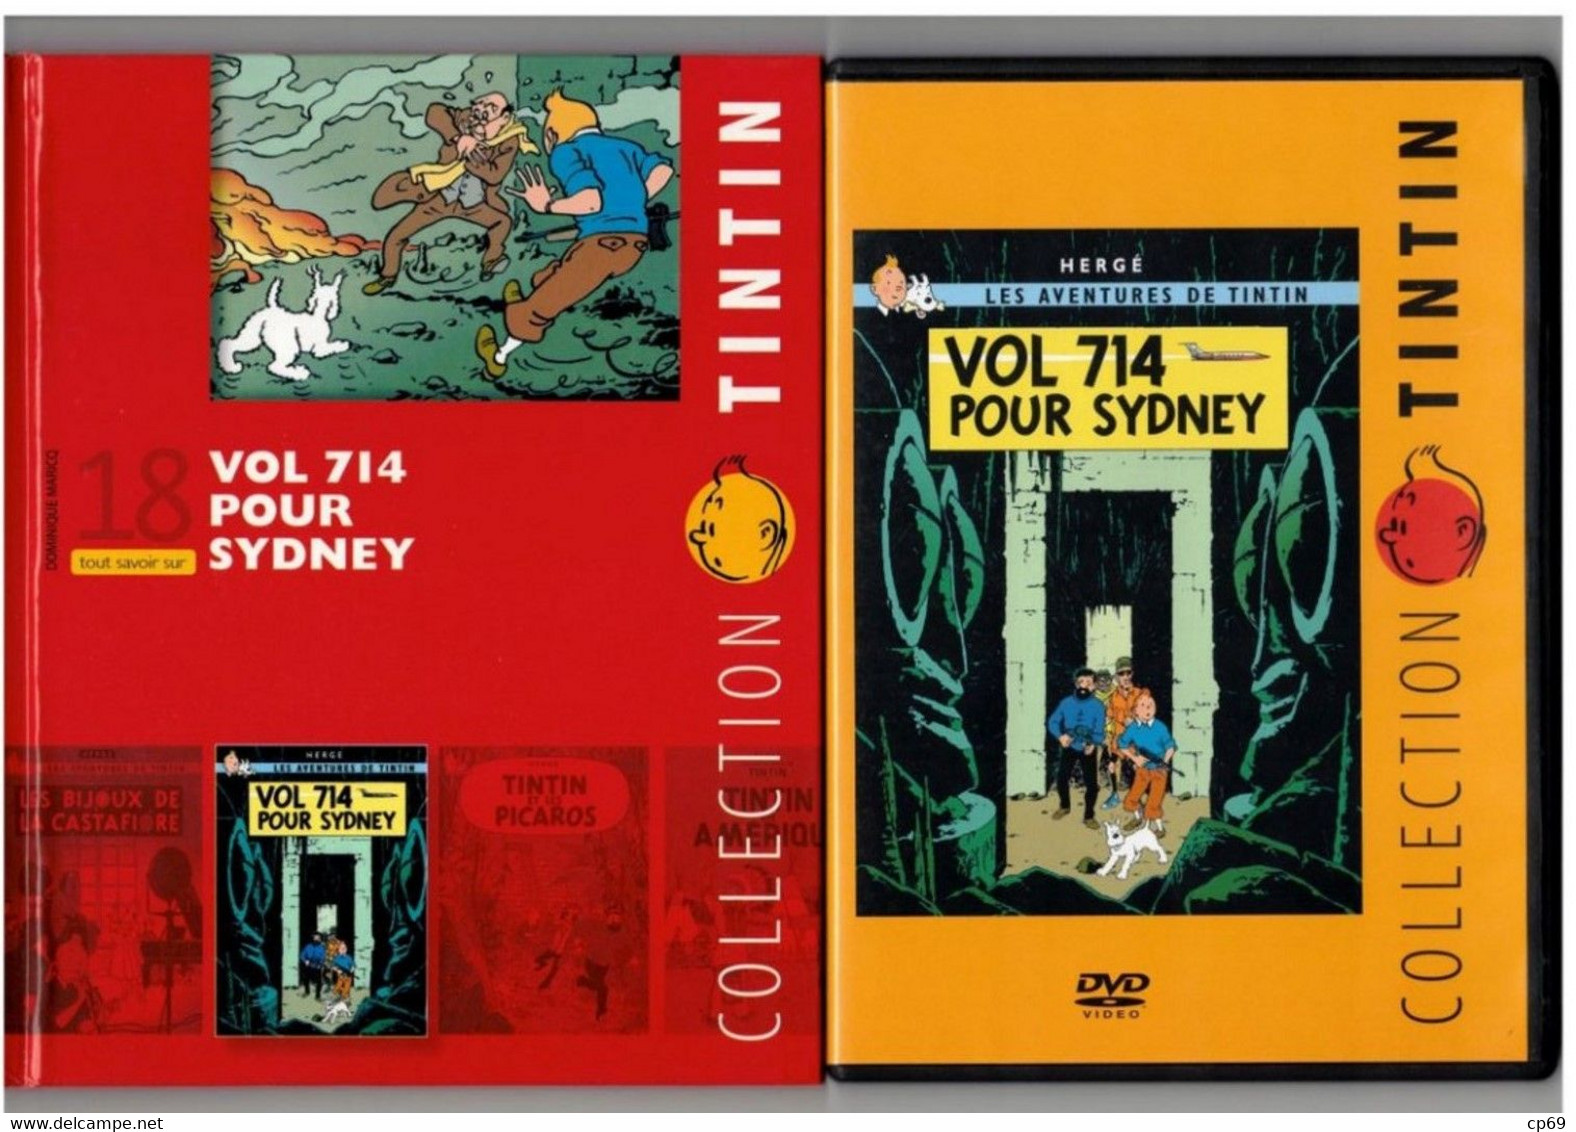 Tintin Hergé/Moulinsart 2010 Milou Chien Dog Cane Vol 714 Pour Sydney N°18 Capitaine Haddock DVD + Livret Explicatif B.E - Animatie